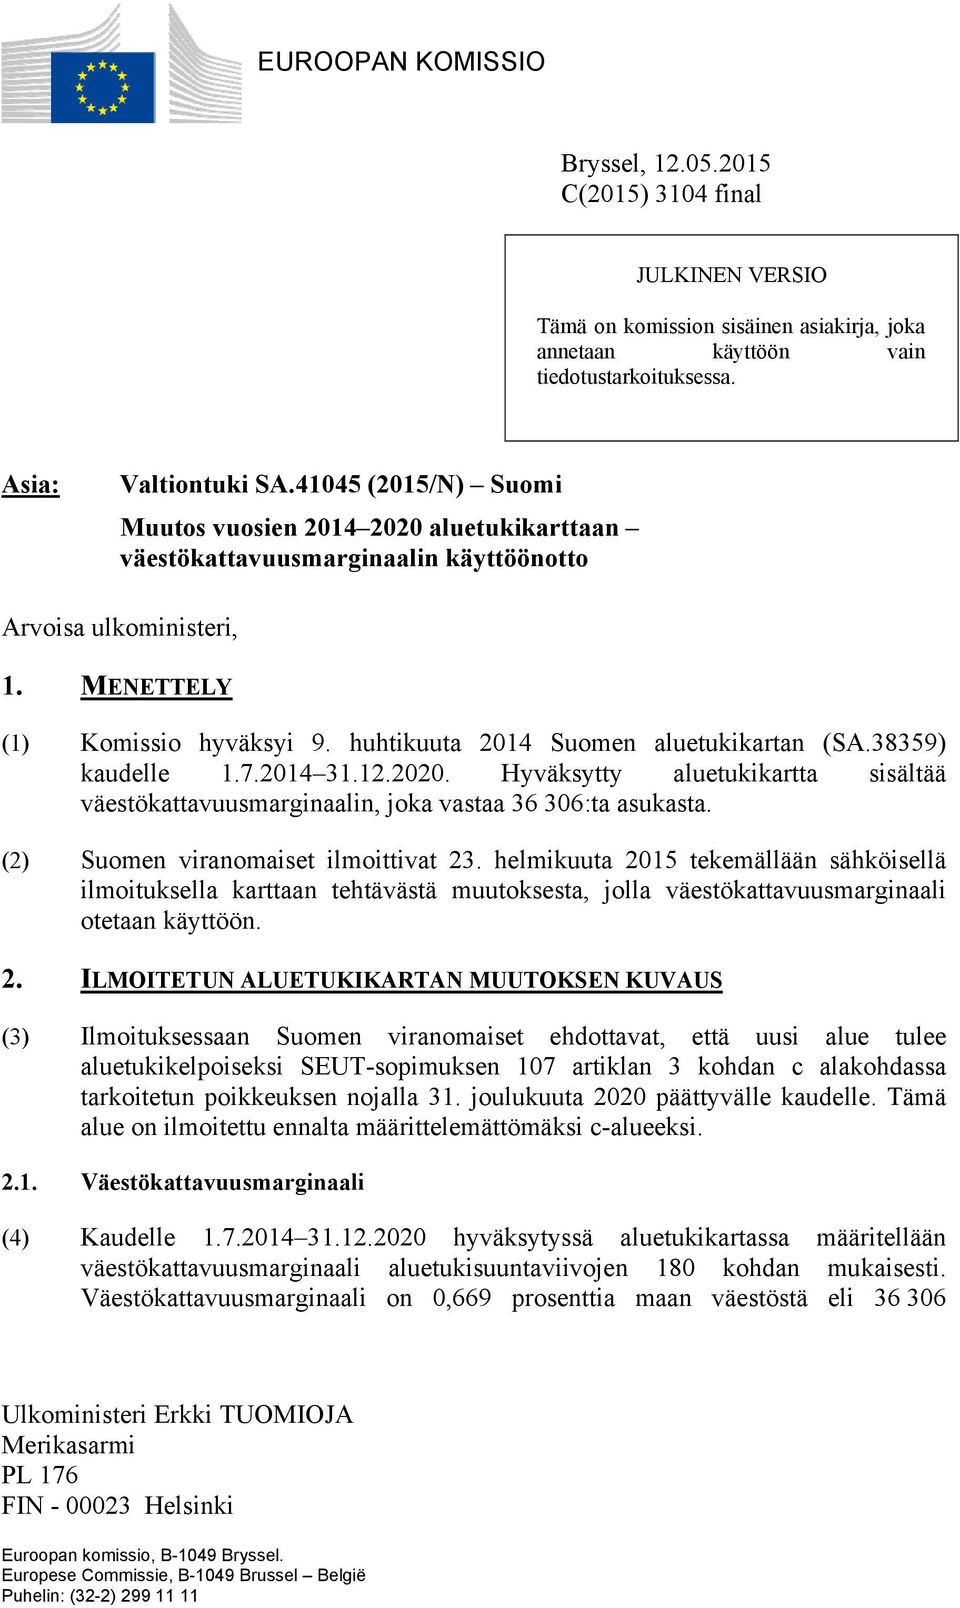 huhtikuuta 2014 Suomen aluetukikartan (SA.38359) kaudelle 1.7.2014 31.12.2020. Hyväksytty aluetukikartta sisältää väestökattavuusmarginaalin, joka vastaa 36 306:ta asukasta.